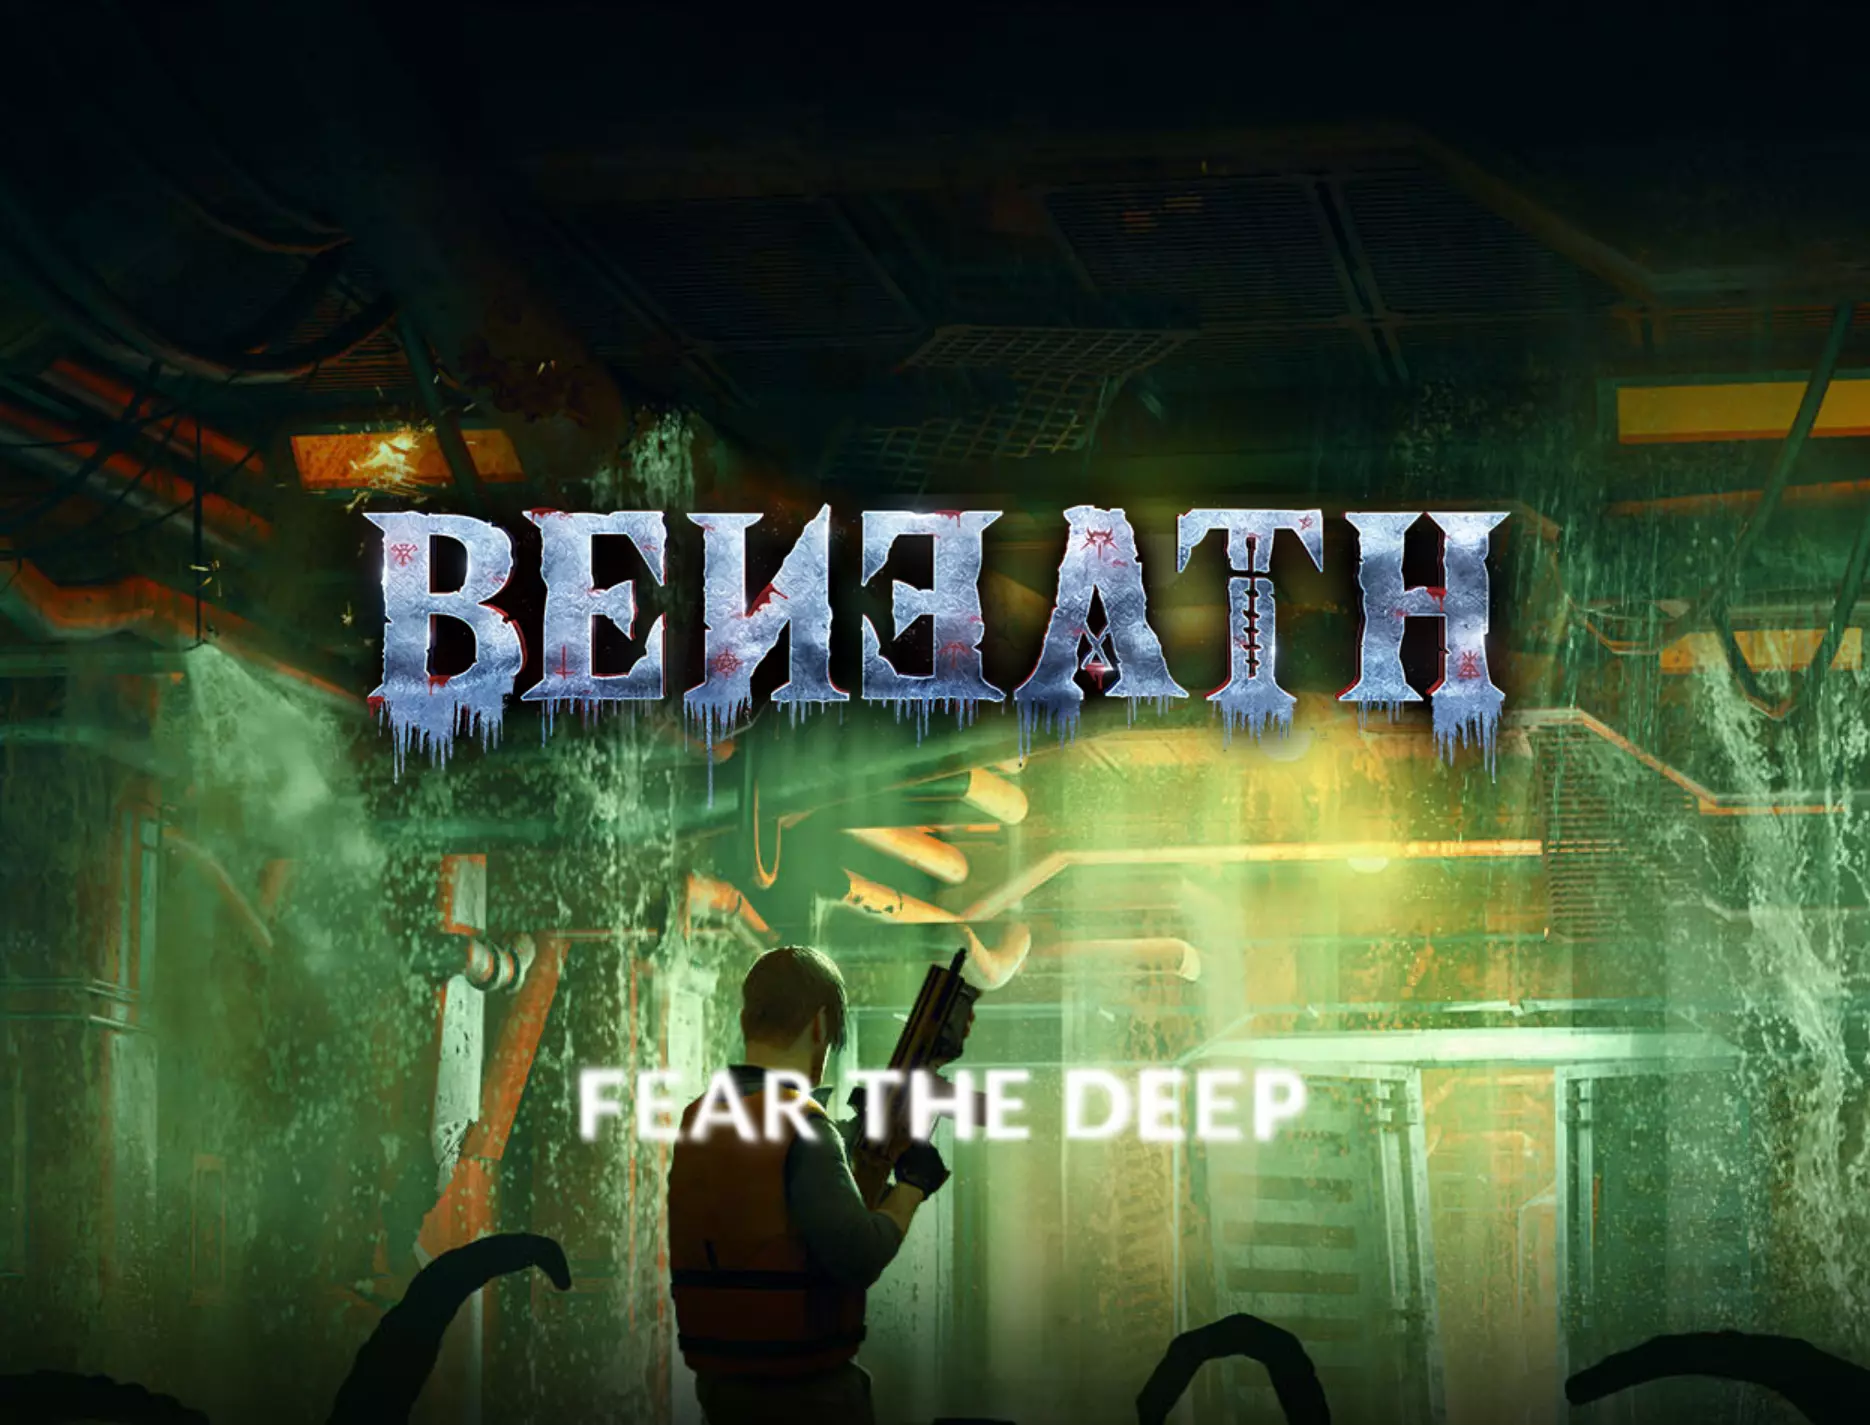 beneath